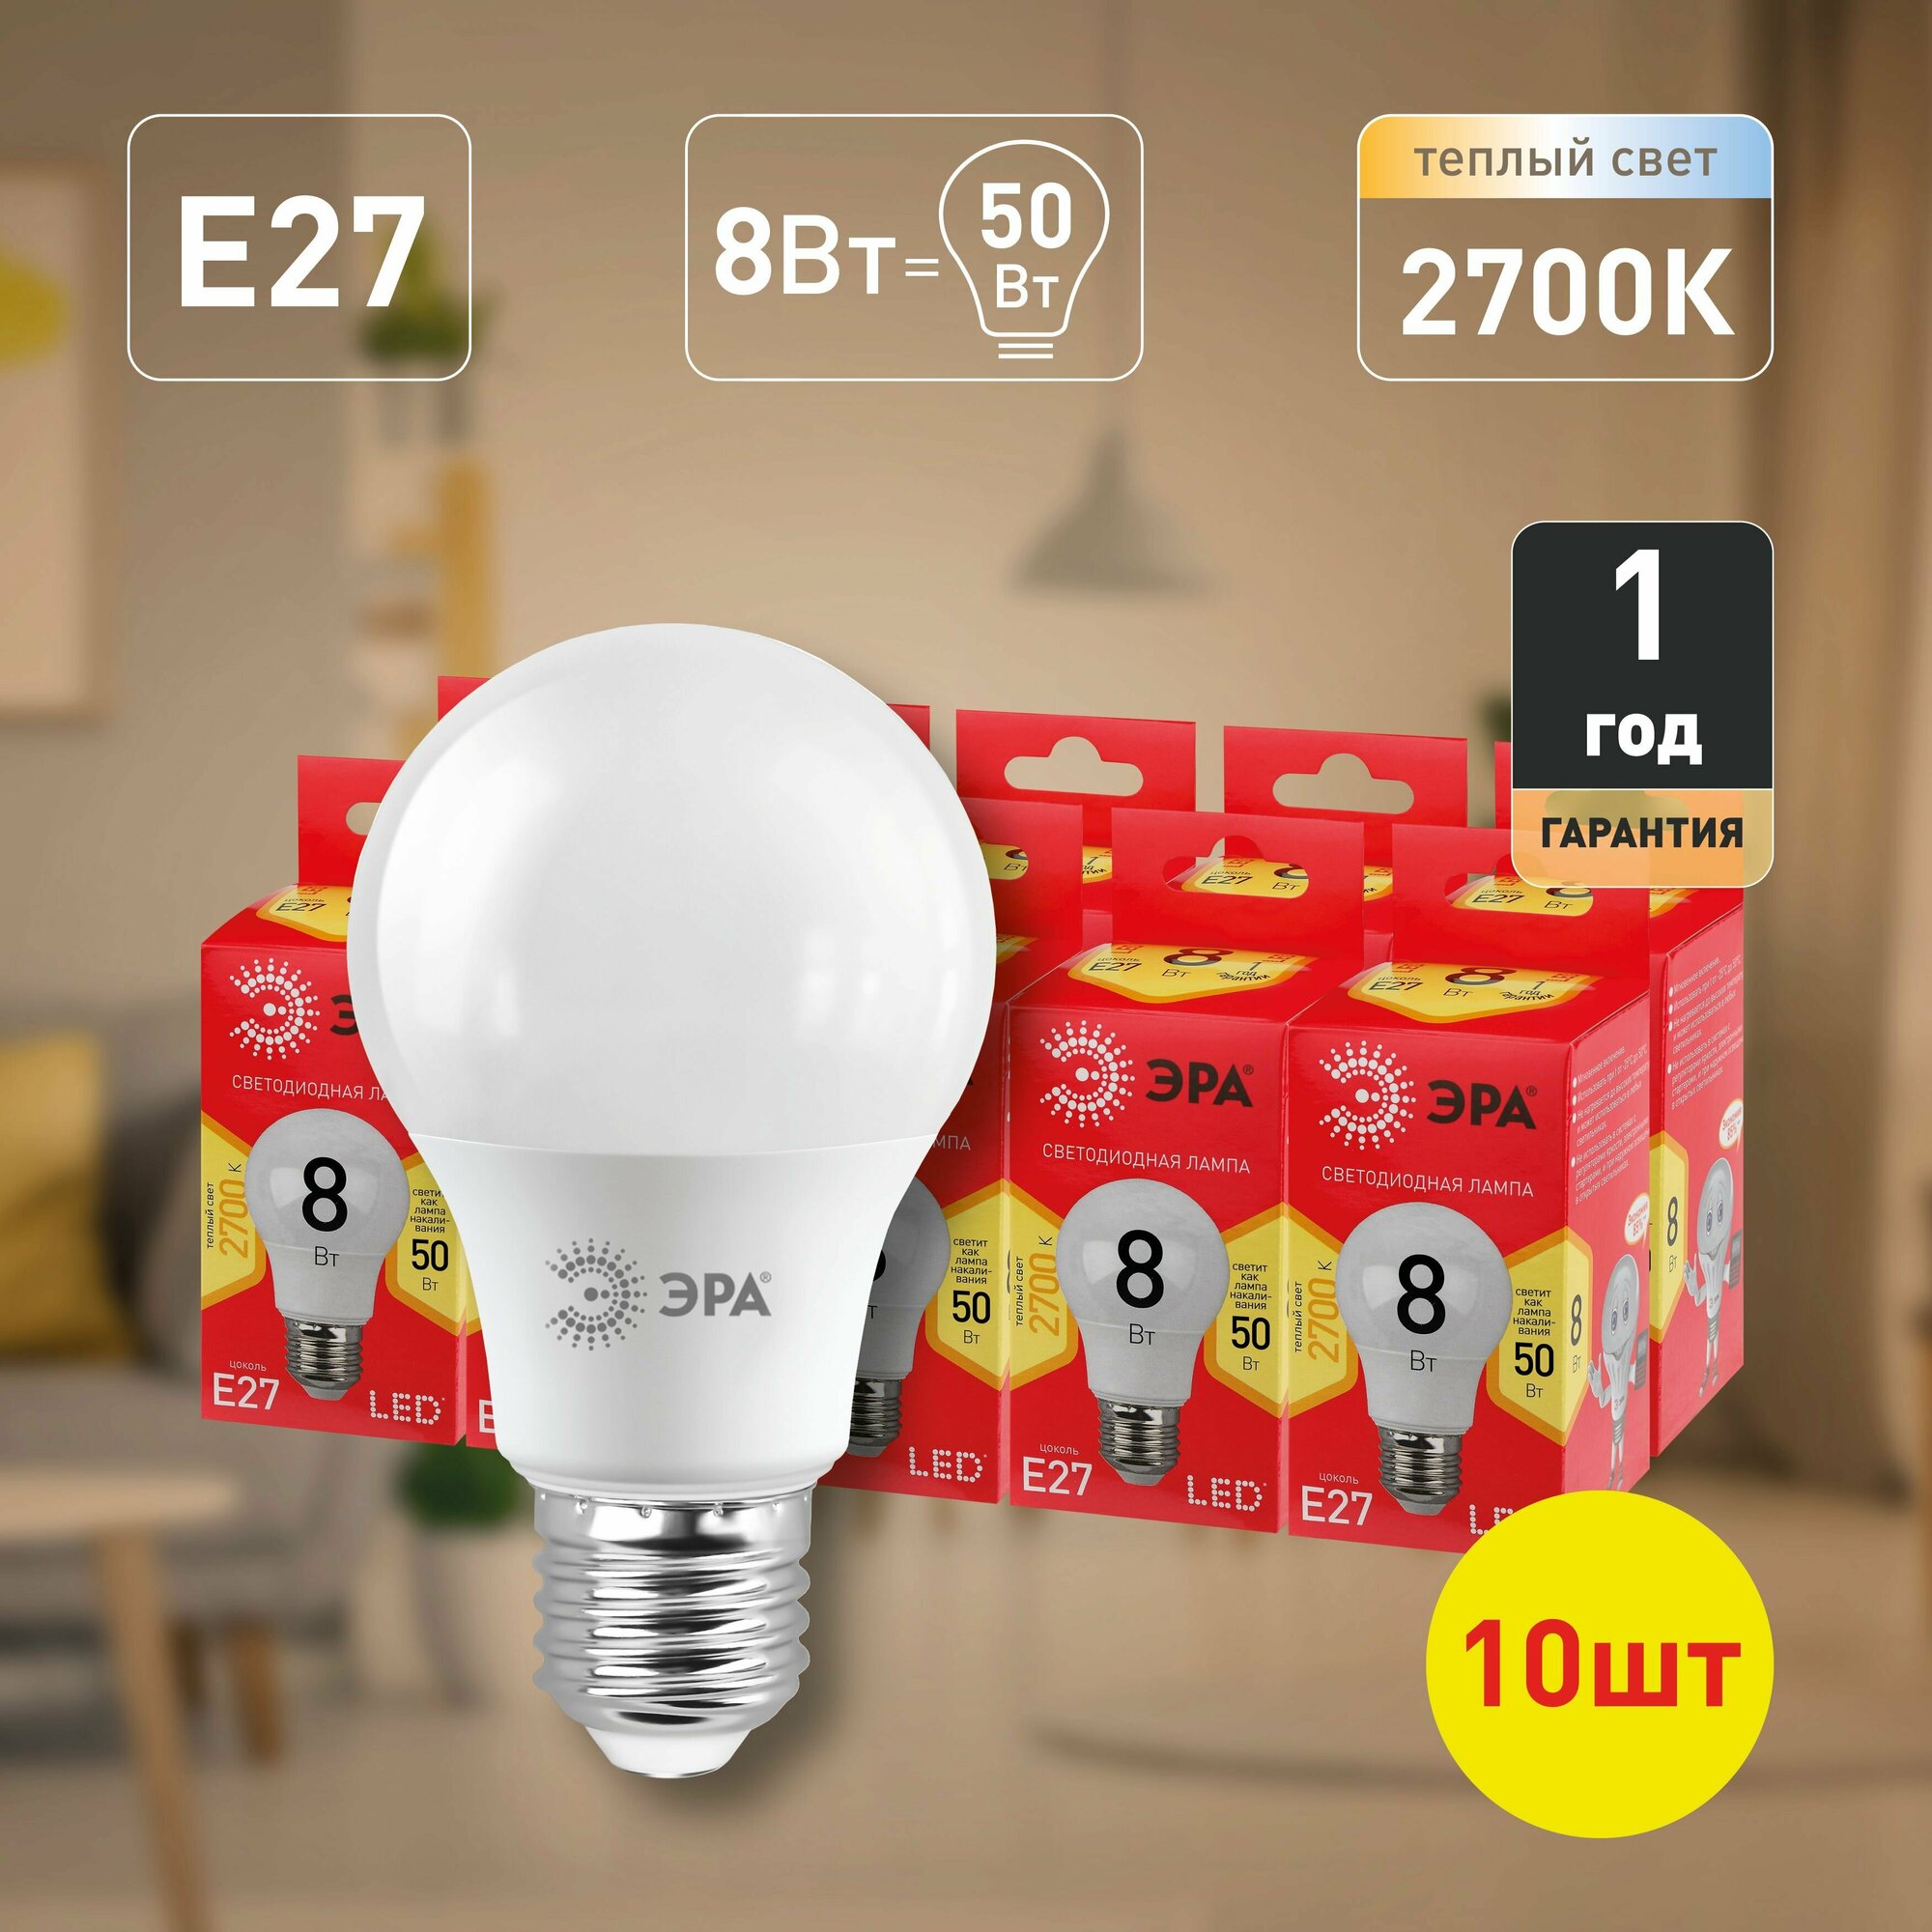 Набор светодиодных лампочек ЭРА LED A55-8W-827-E27 R 2700K груша 8 Вт 10 штук